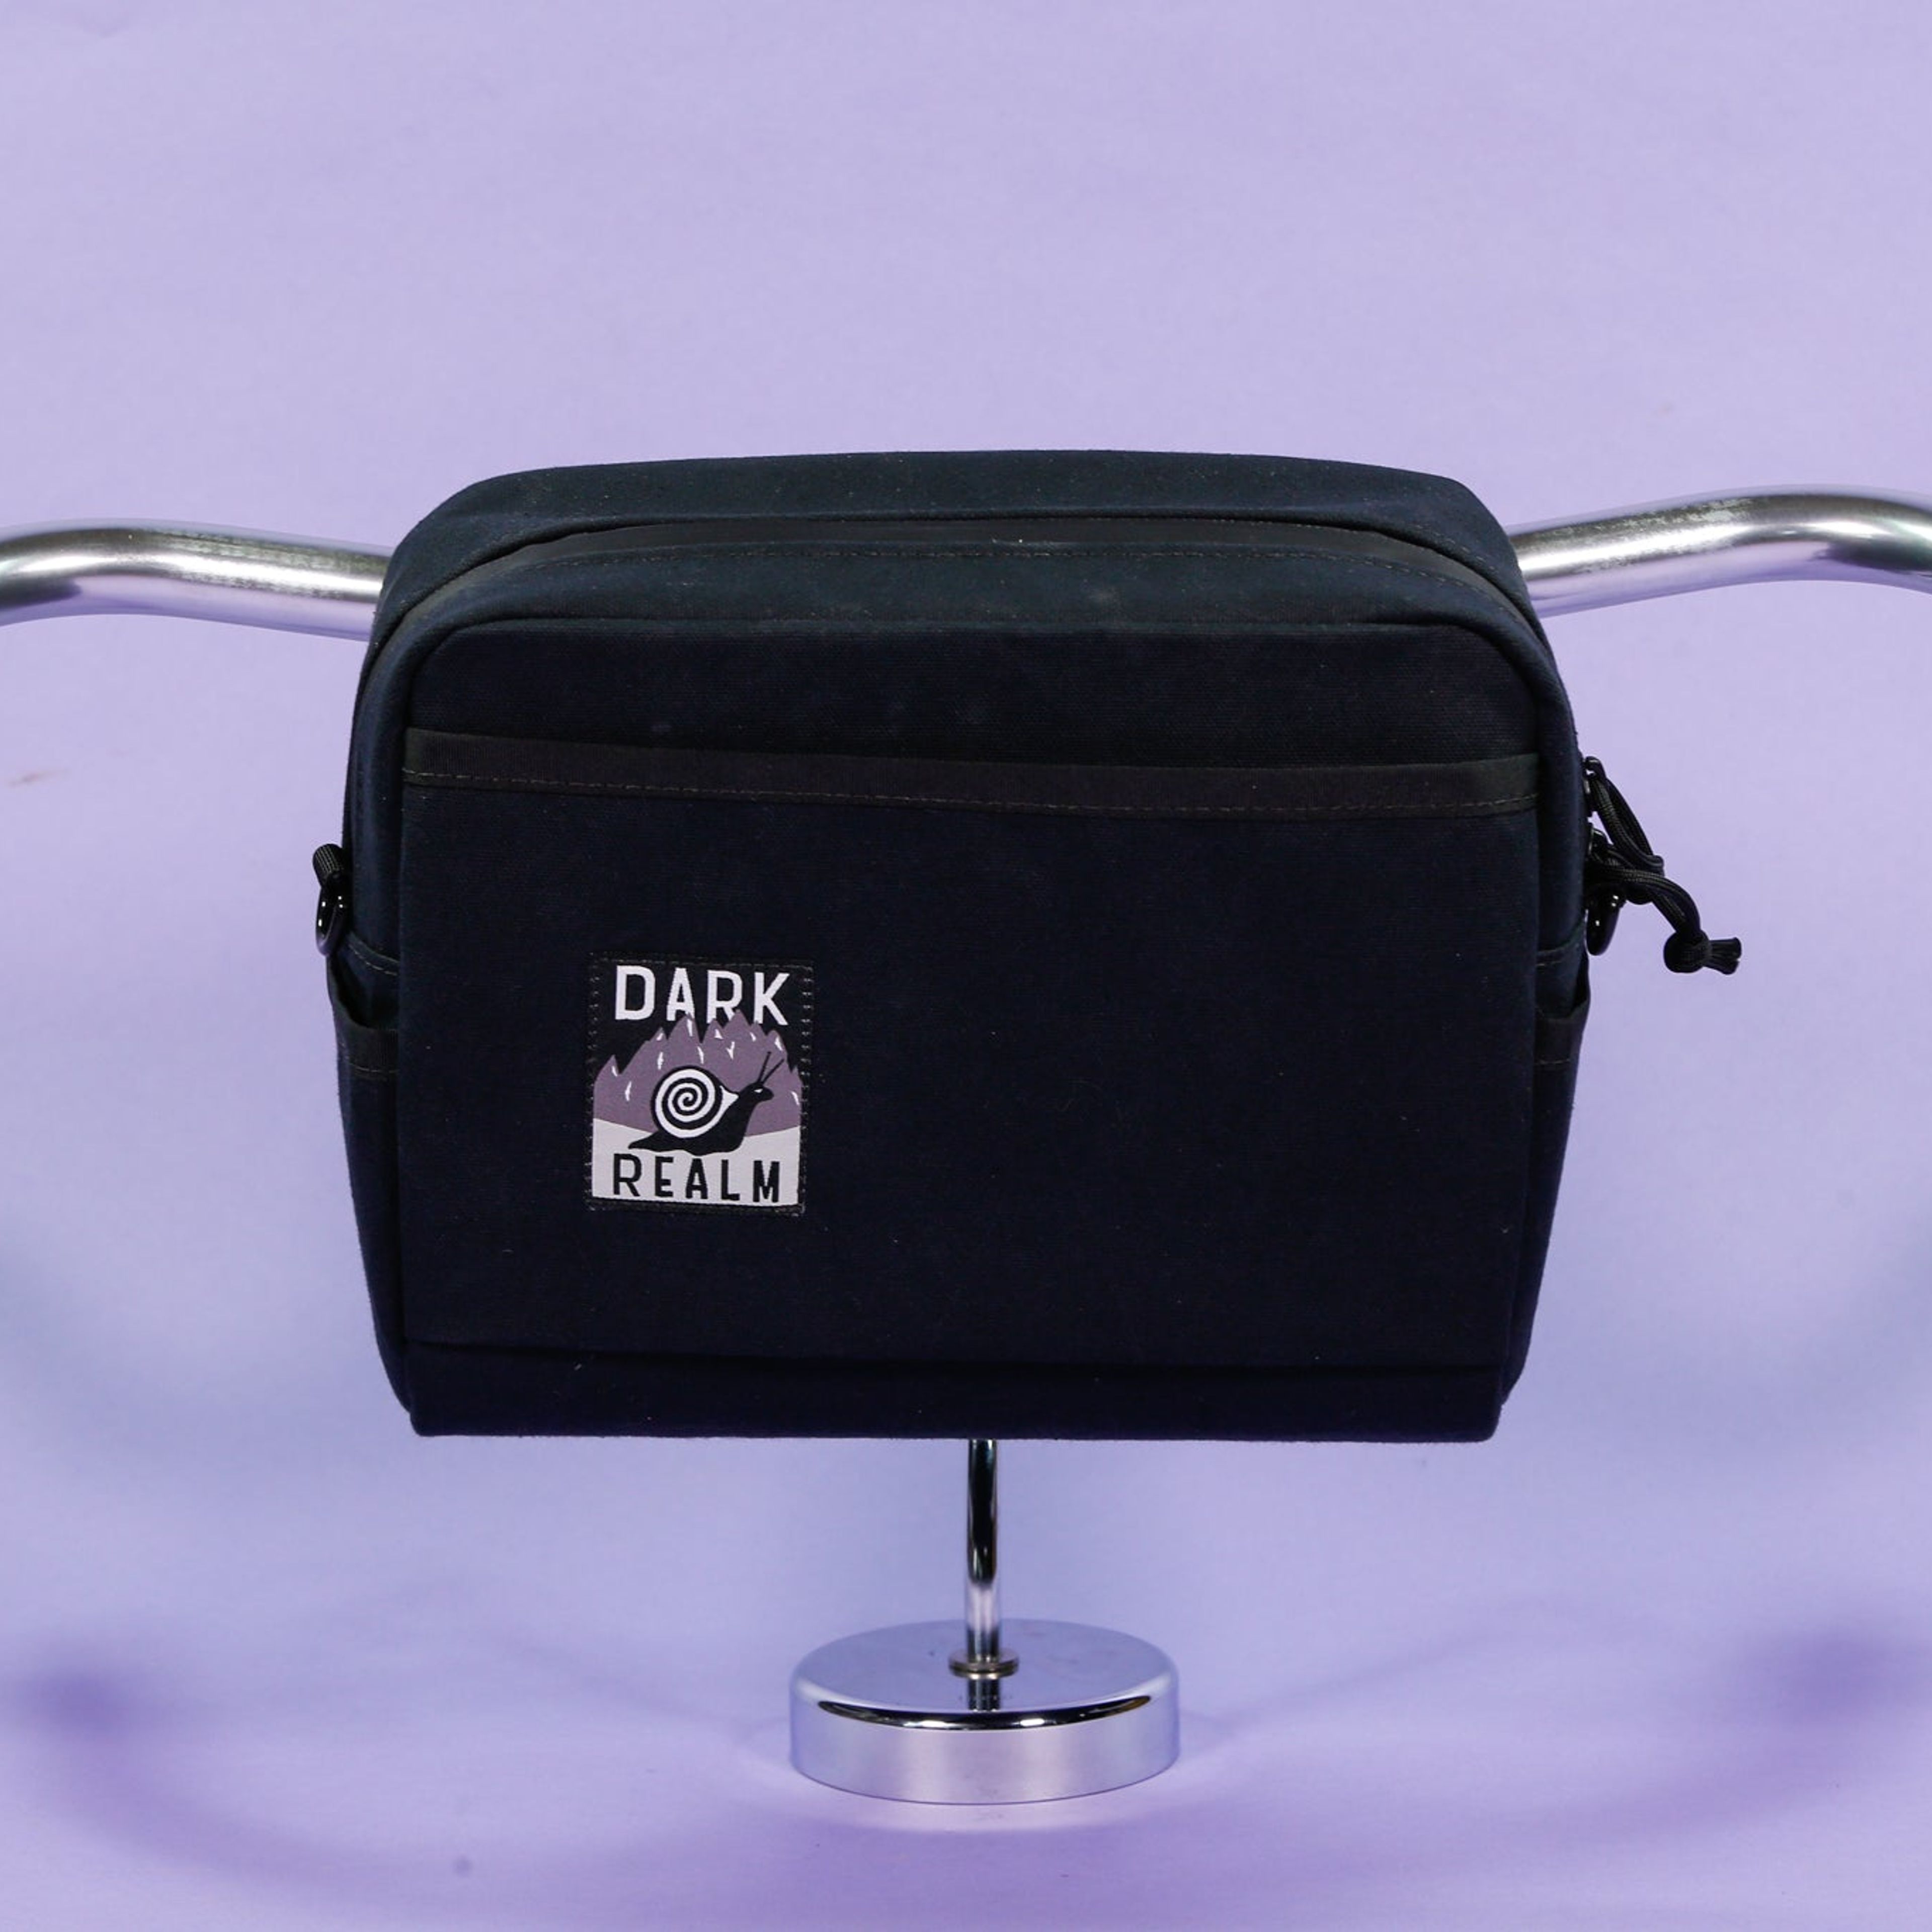 TBD Handlebar Bag by Dark Realm